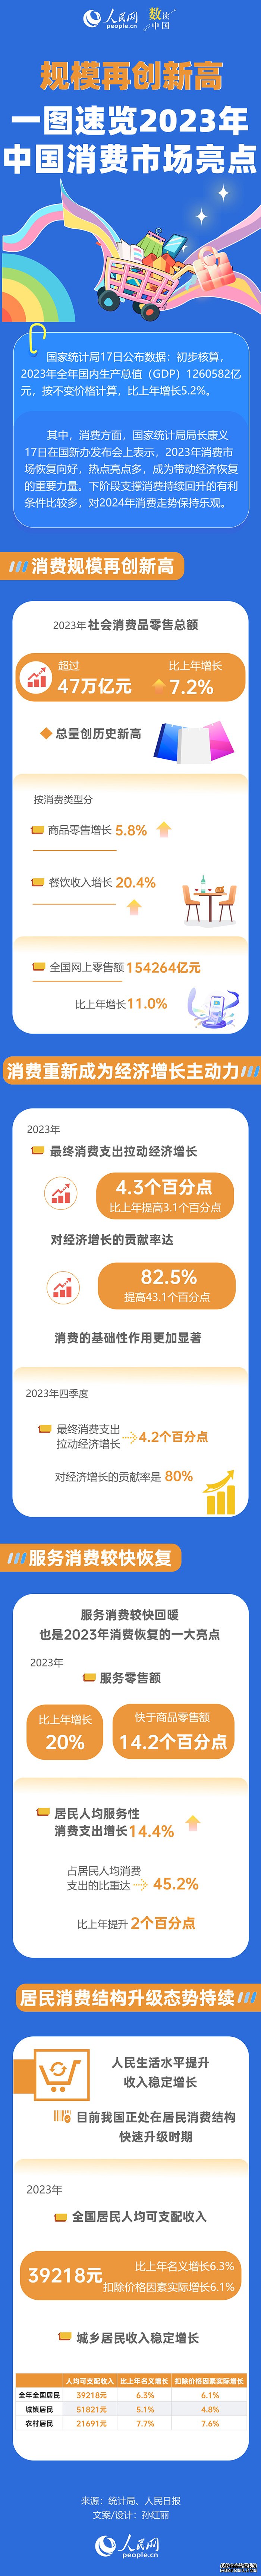 数读中国 | 规模再创新高 一图速览2023年中国消费市场亮点